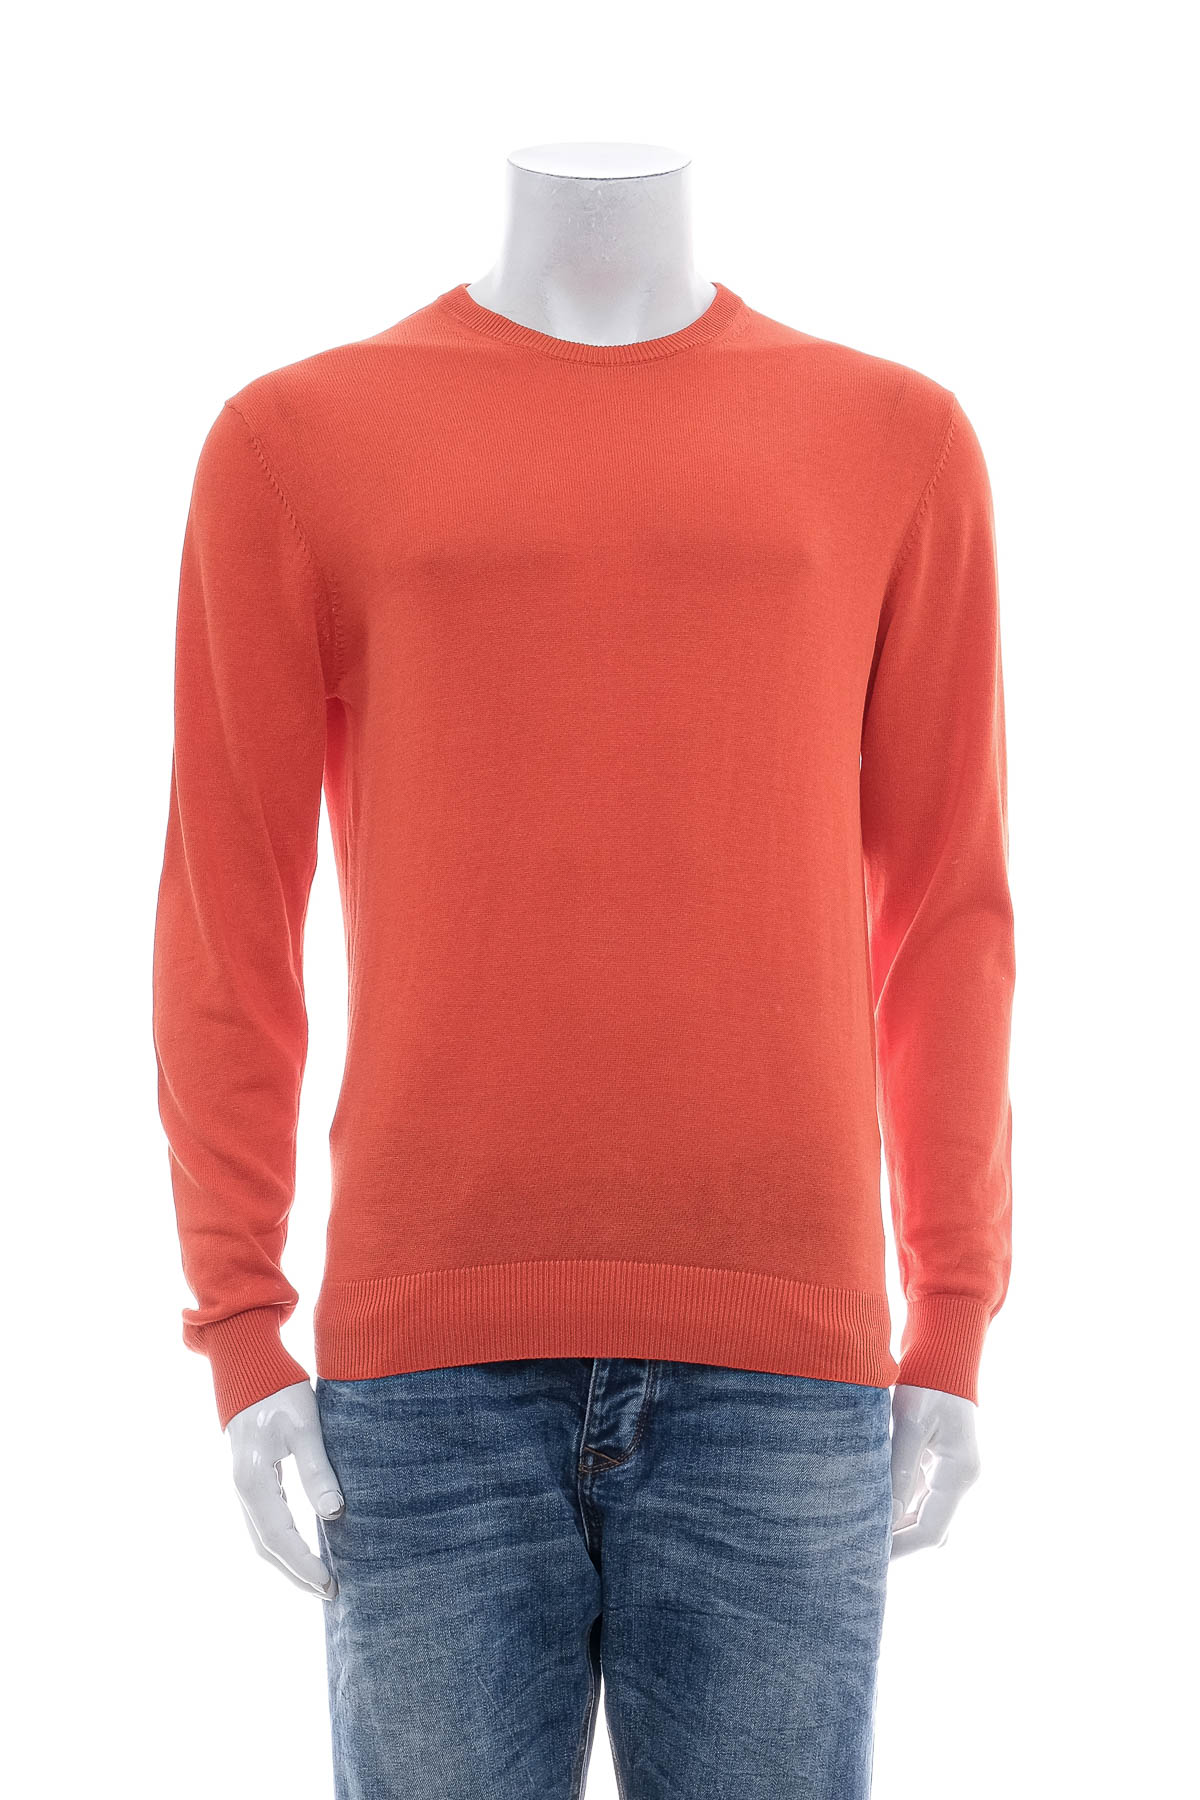 Men's sweater - DOPPELGANGER - 0